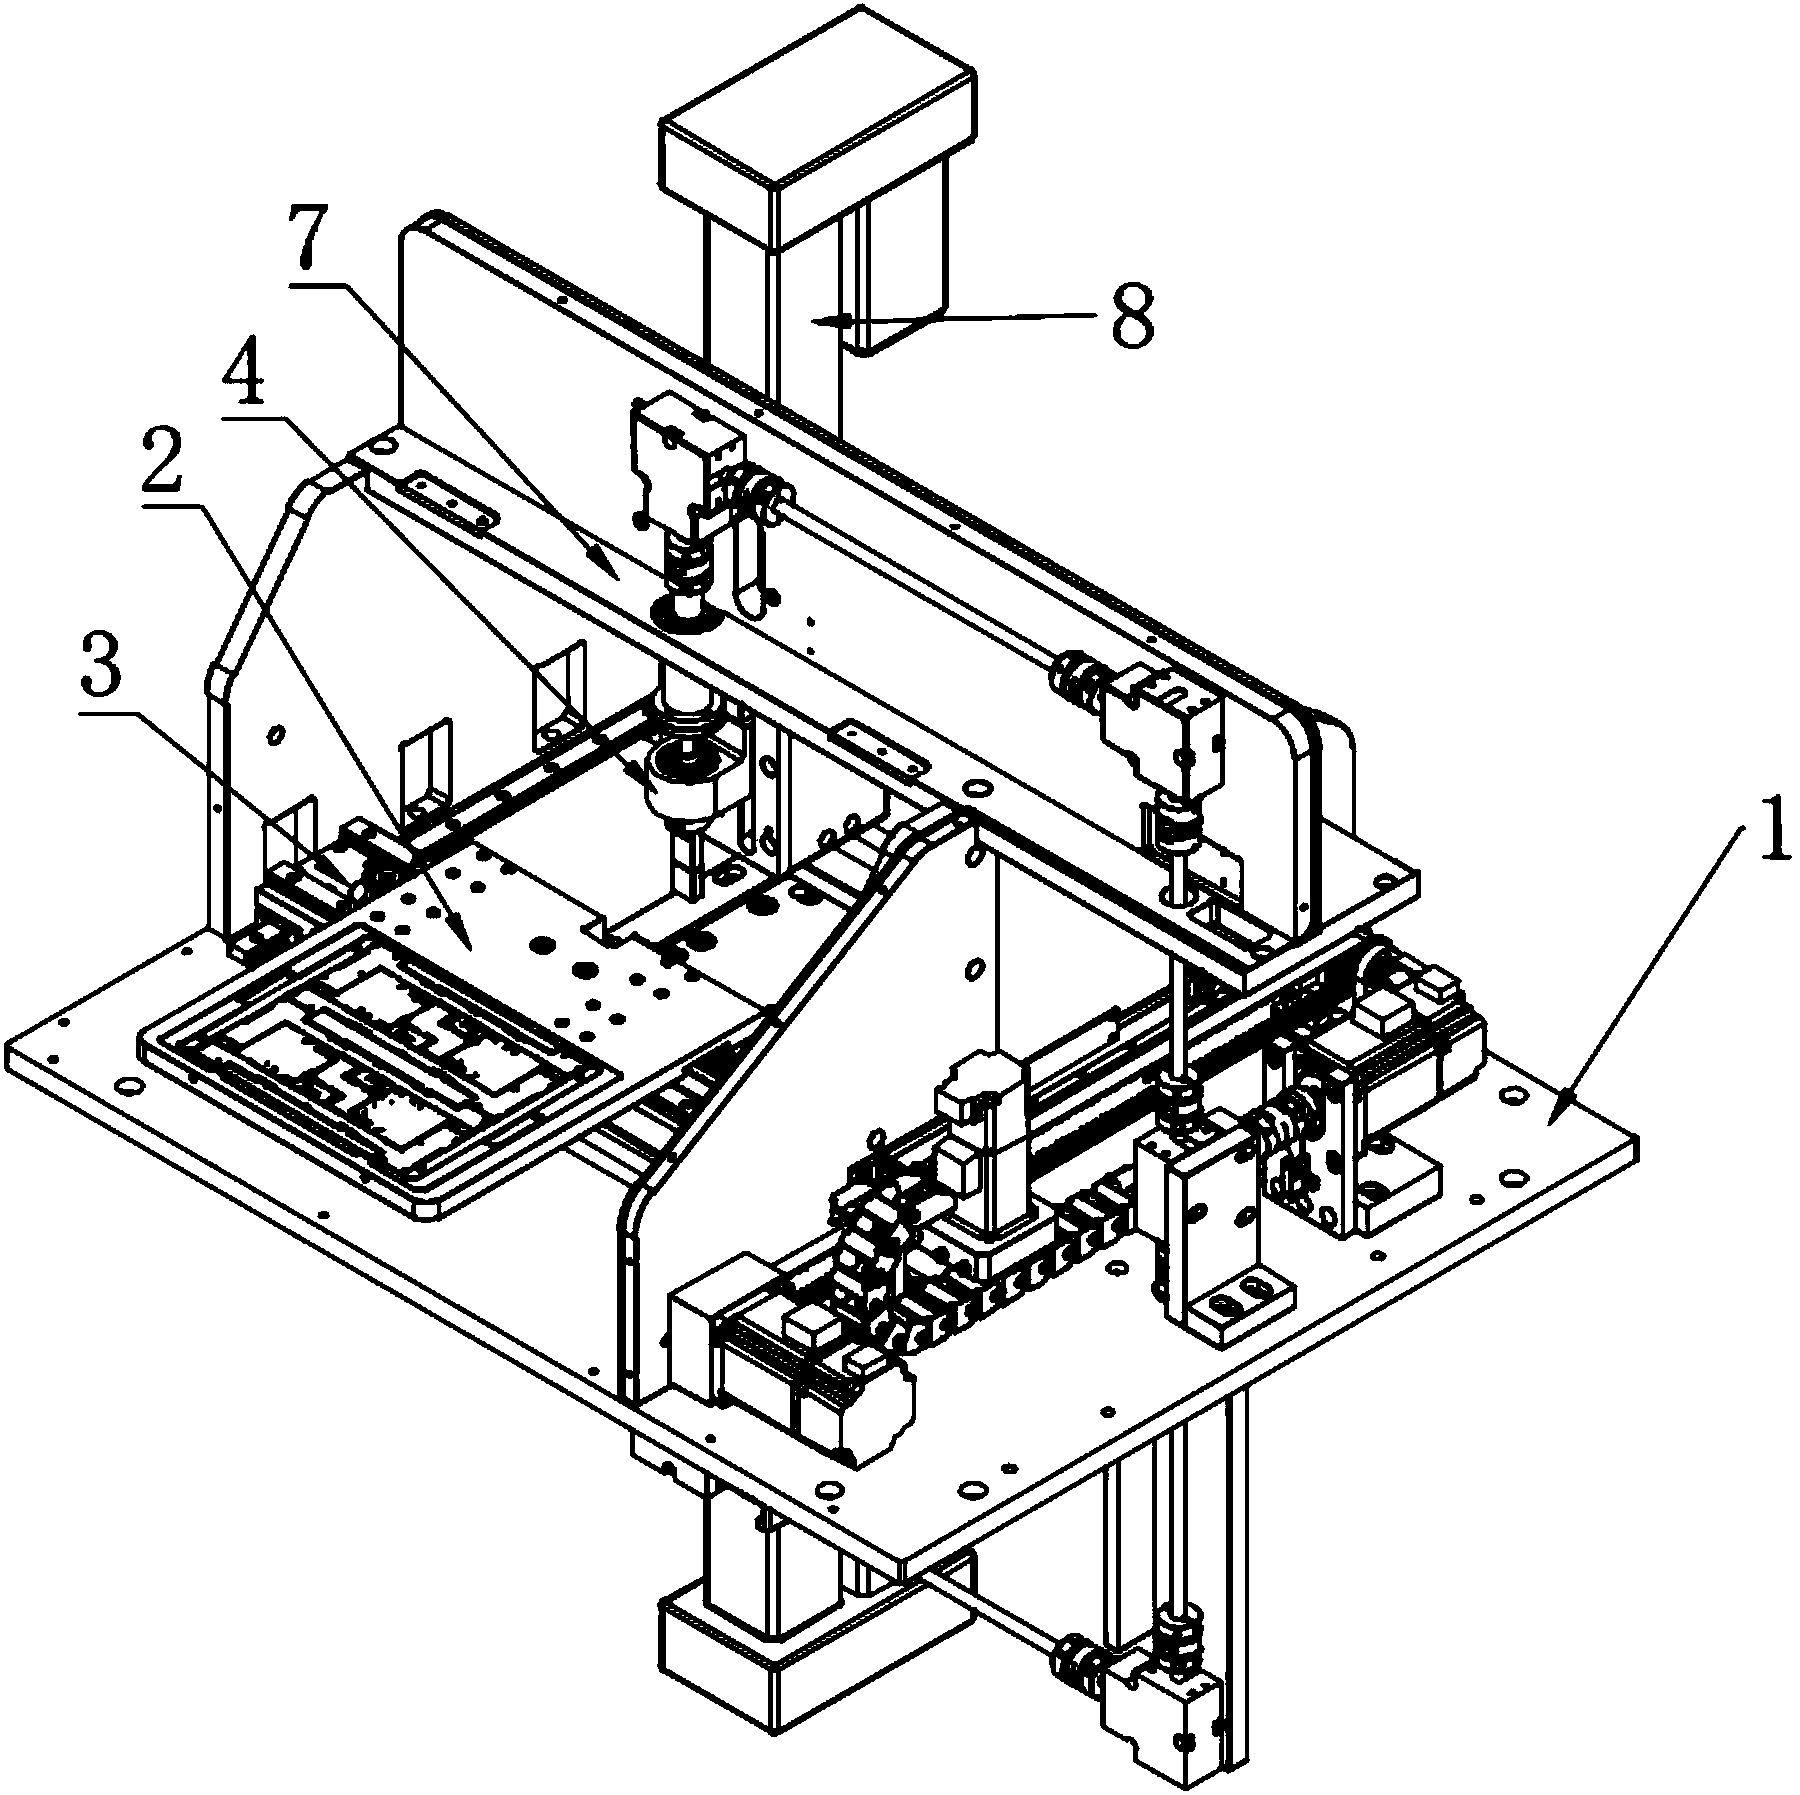 Cut-off PCB (printed circuit board) separator